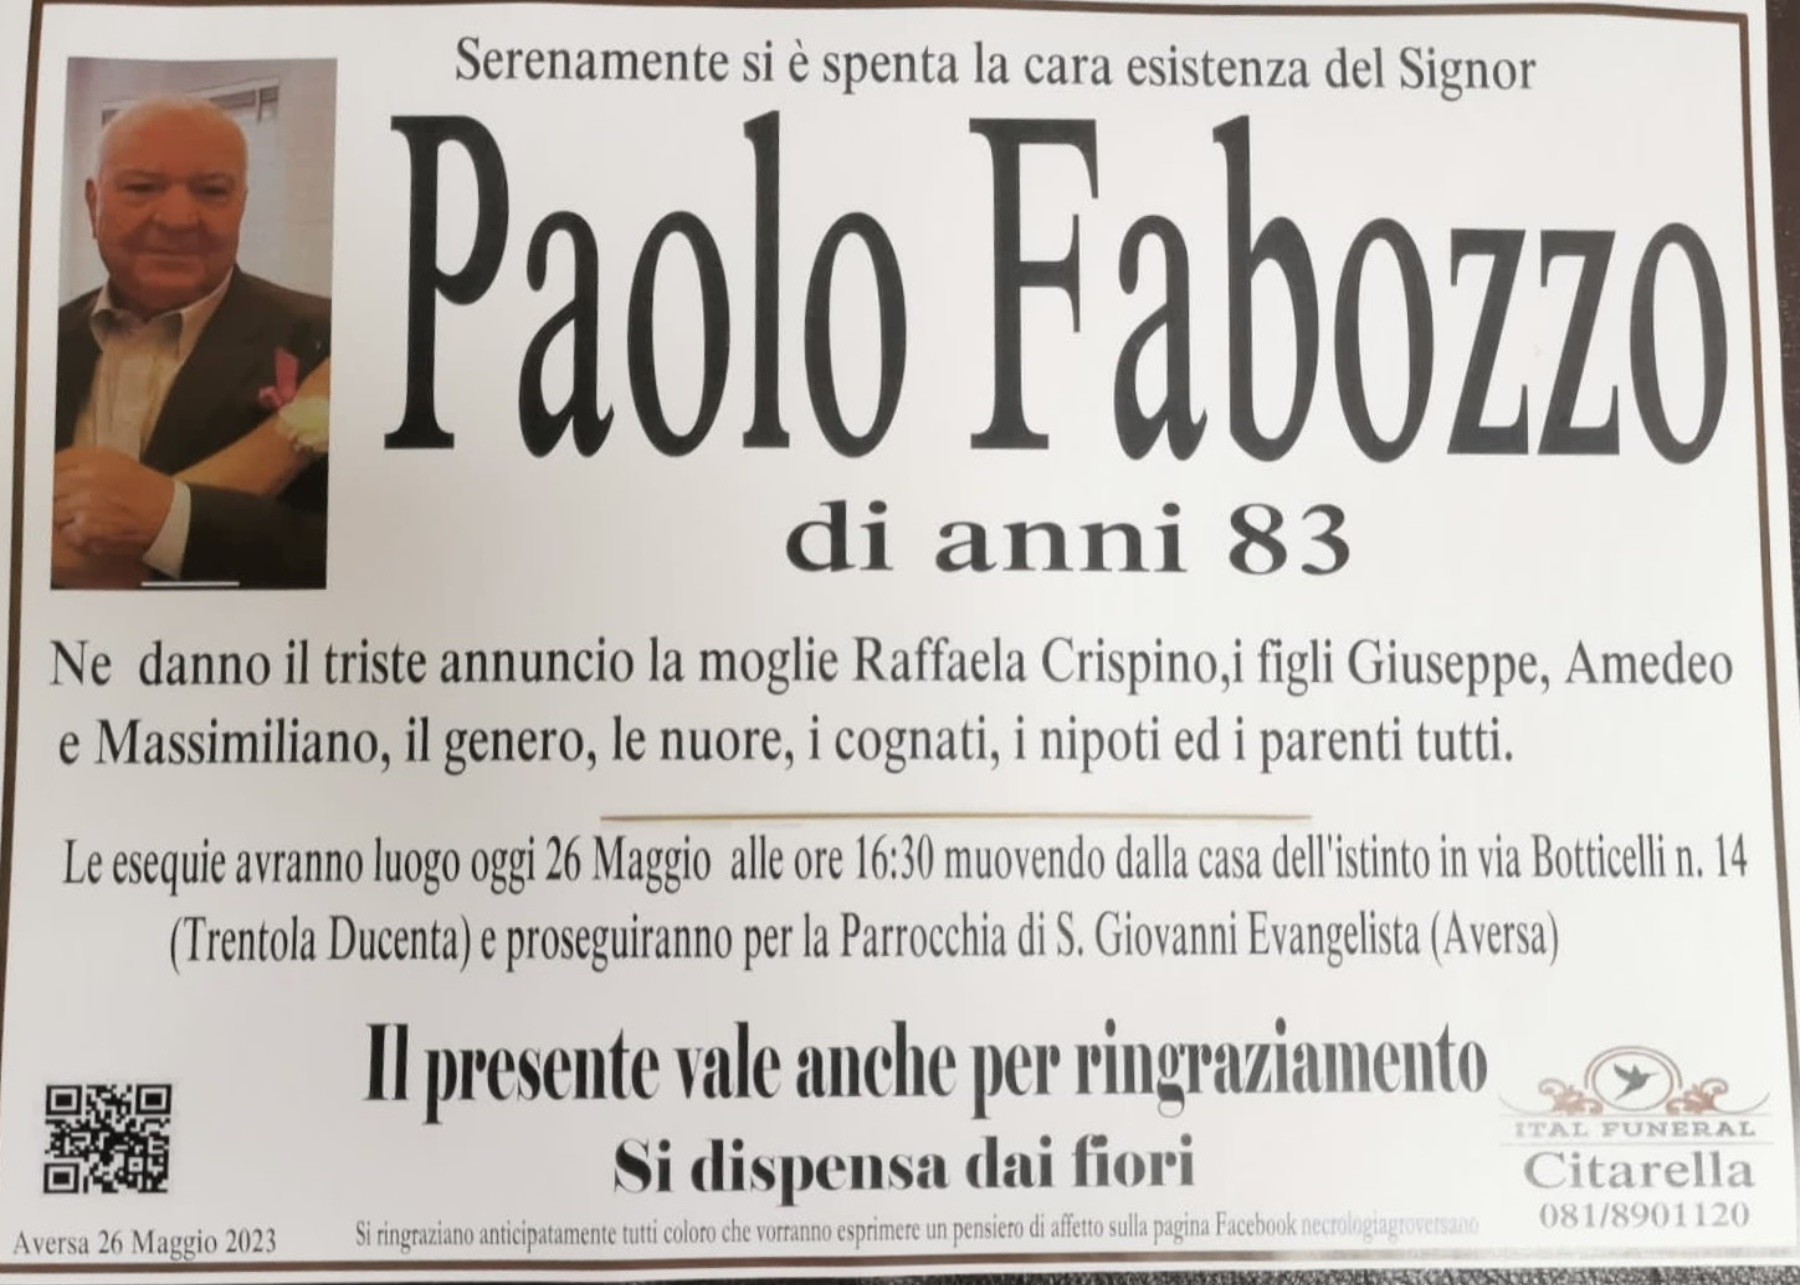 Paolo Fabozzo